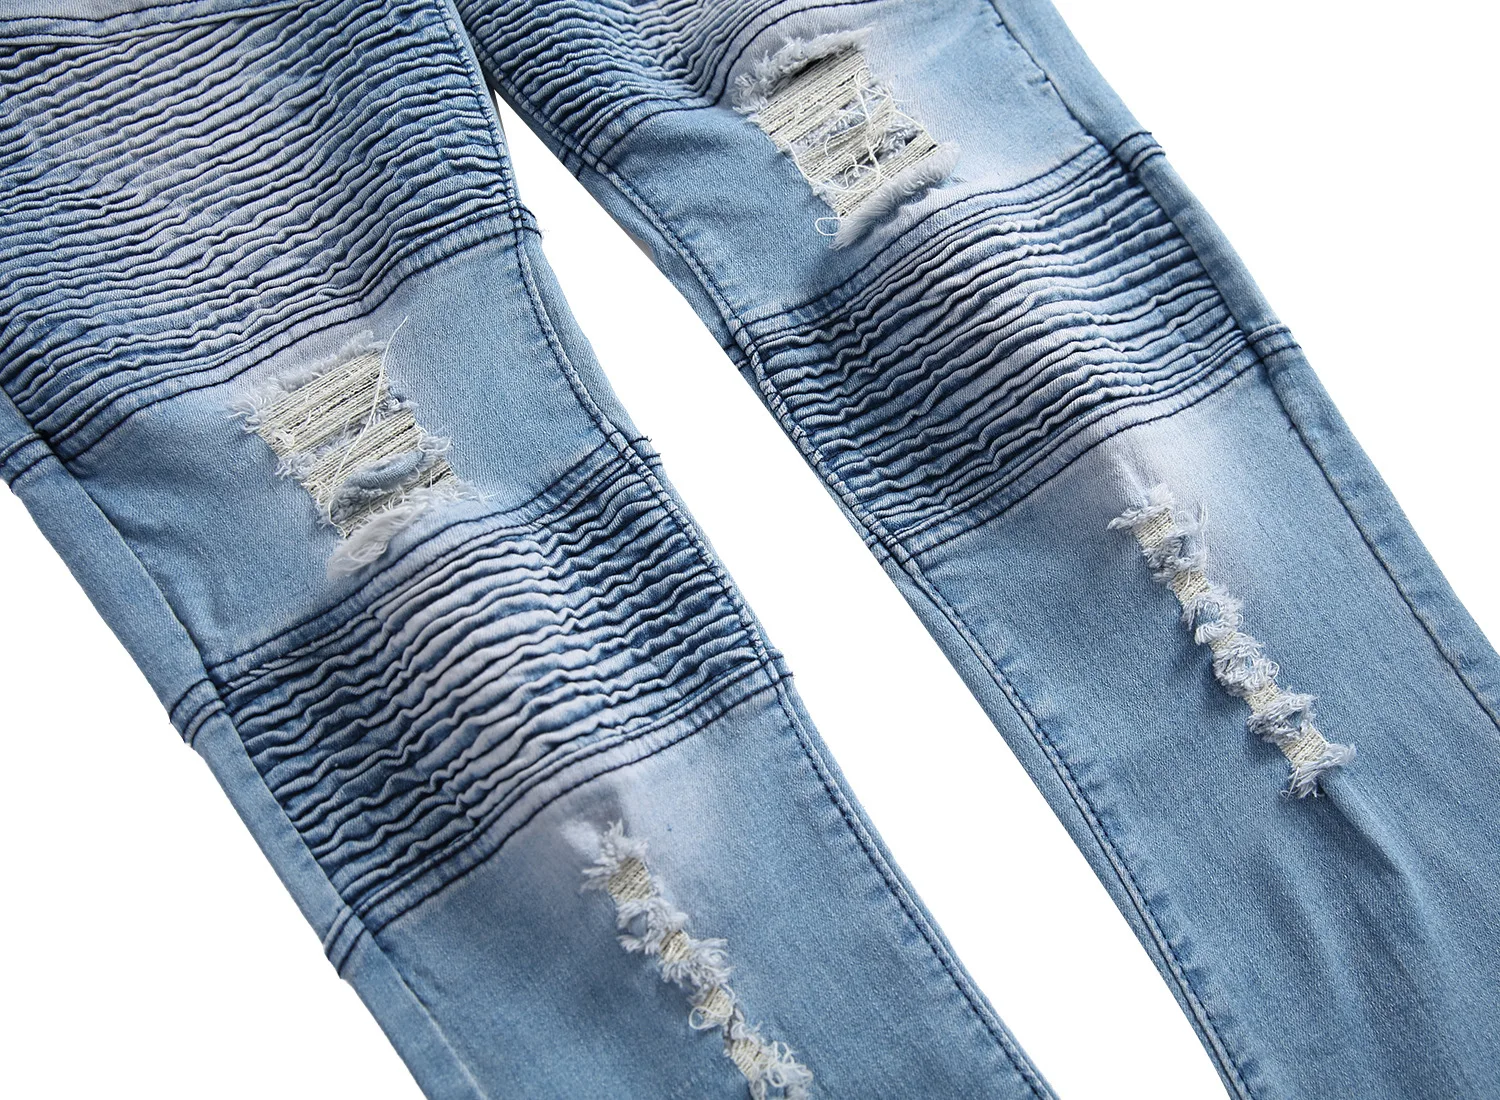 Gersri байкерские джинсы Для мужчин новый Повседневное промывают хлопок раза прямые Рваные джинсы ковбойские эластичные узкие джинсы брюки